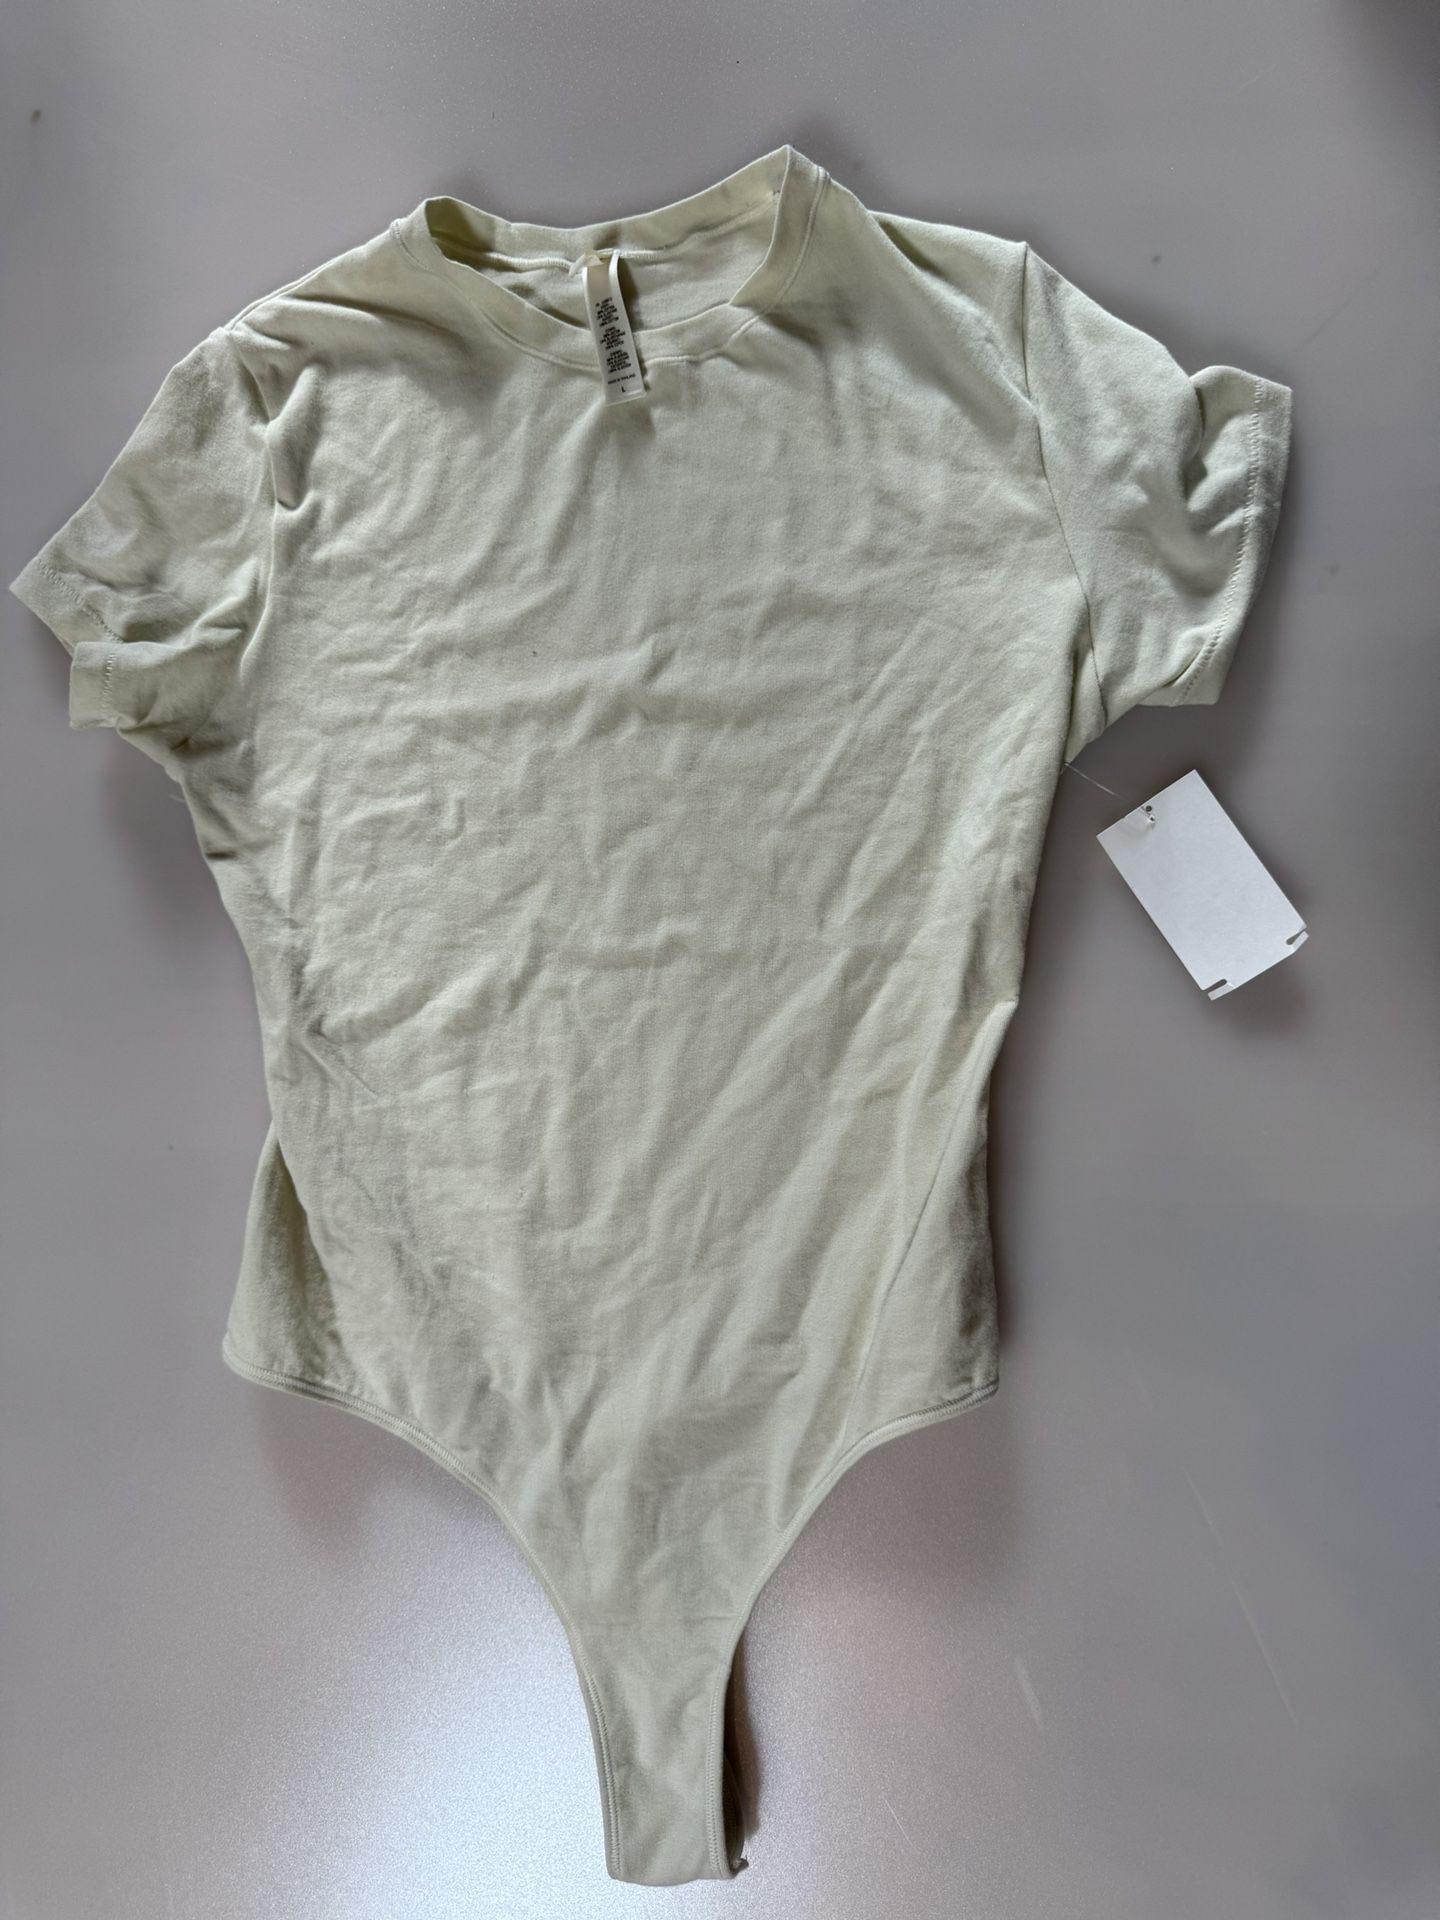 SKIMS Cotton Jersey T-Shirt Bodysuit Size Large Bone Color $62.00